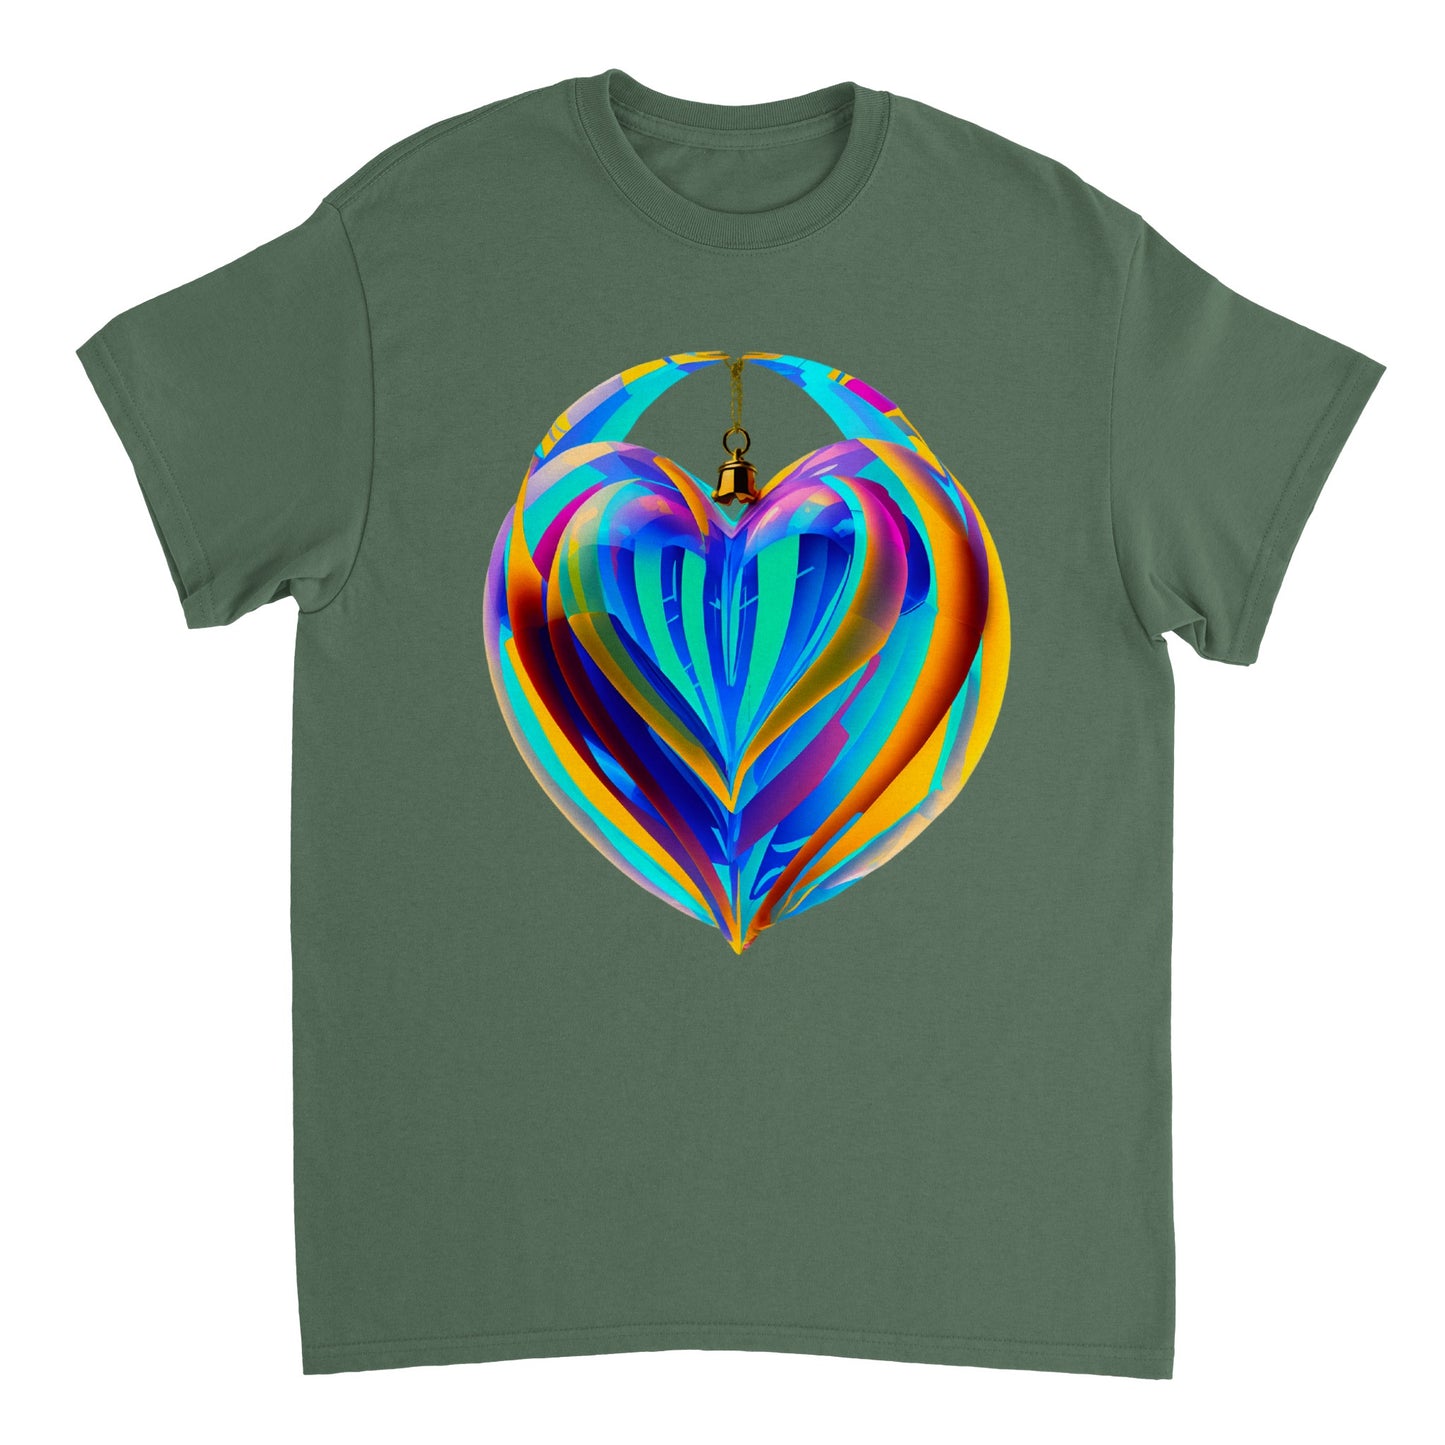 Love Heart - Heavyweight Unisex Crewneck T-shirt 38